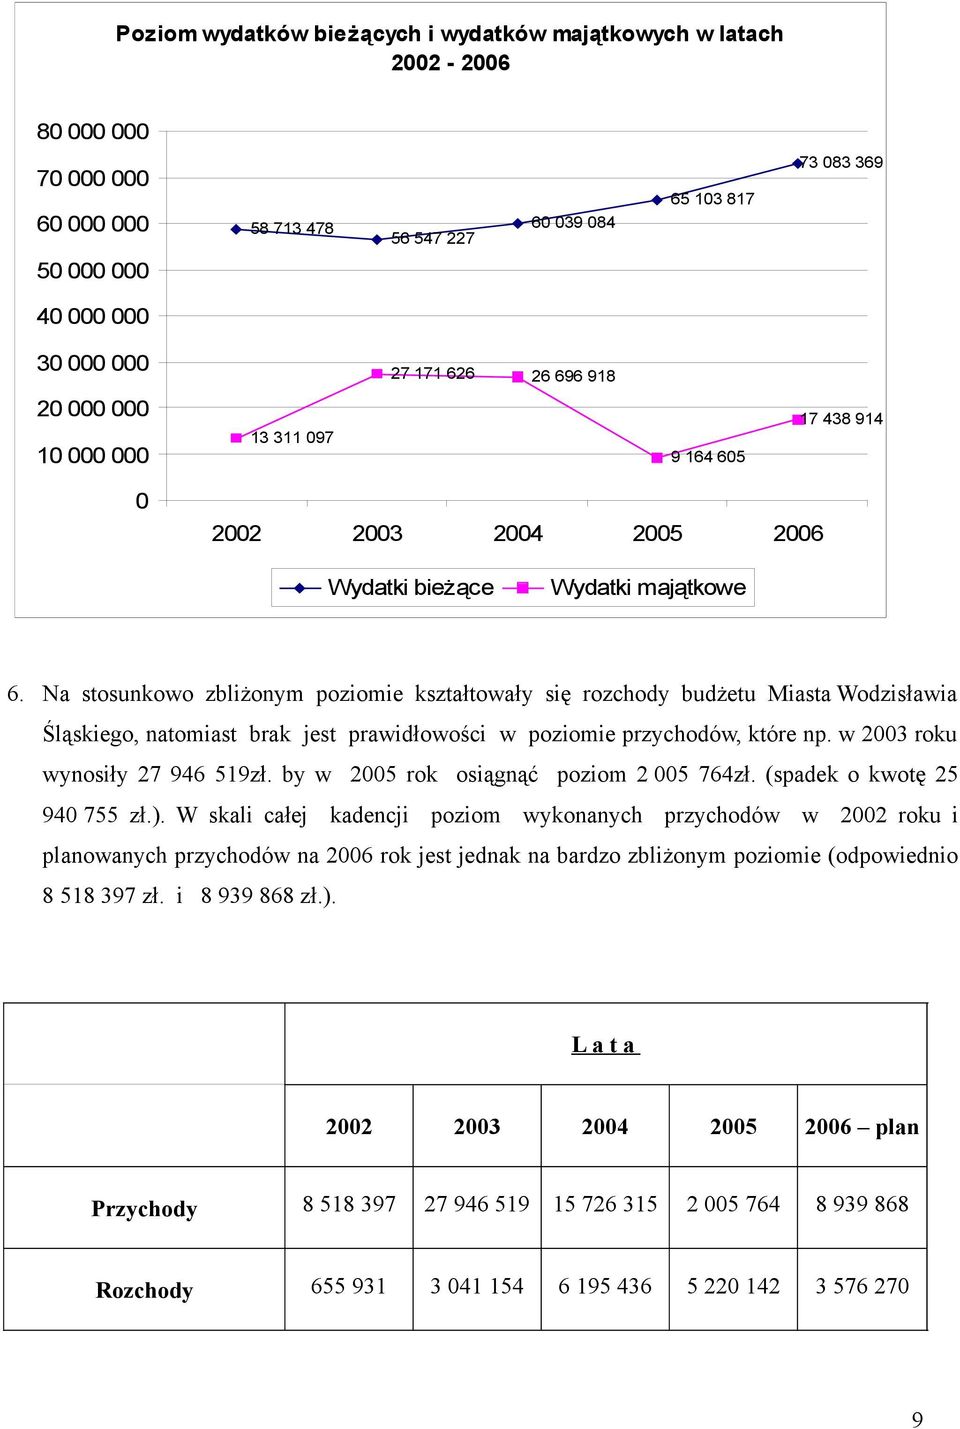 Na stosunkowo zbliżonym poziomie kształtowały się rozchody budżetu Miasta Wodzisławia Śląskiego, natomiast brak jest prawidłowości w poziomie przychodów, które np. w 2003 roku wynosiły 27 946 519zł.